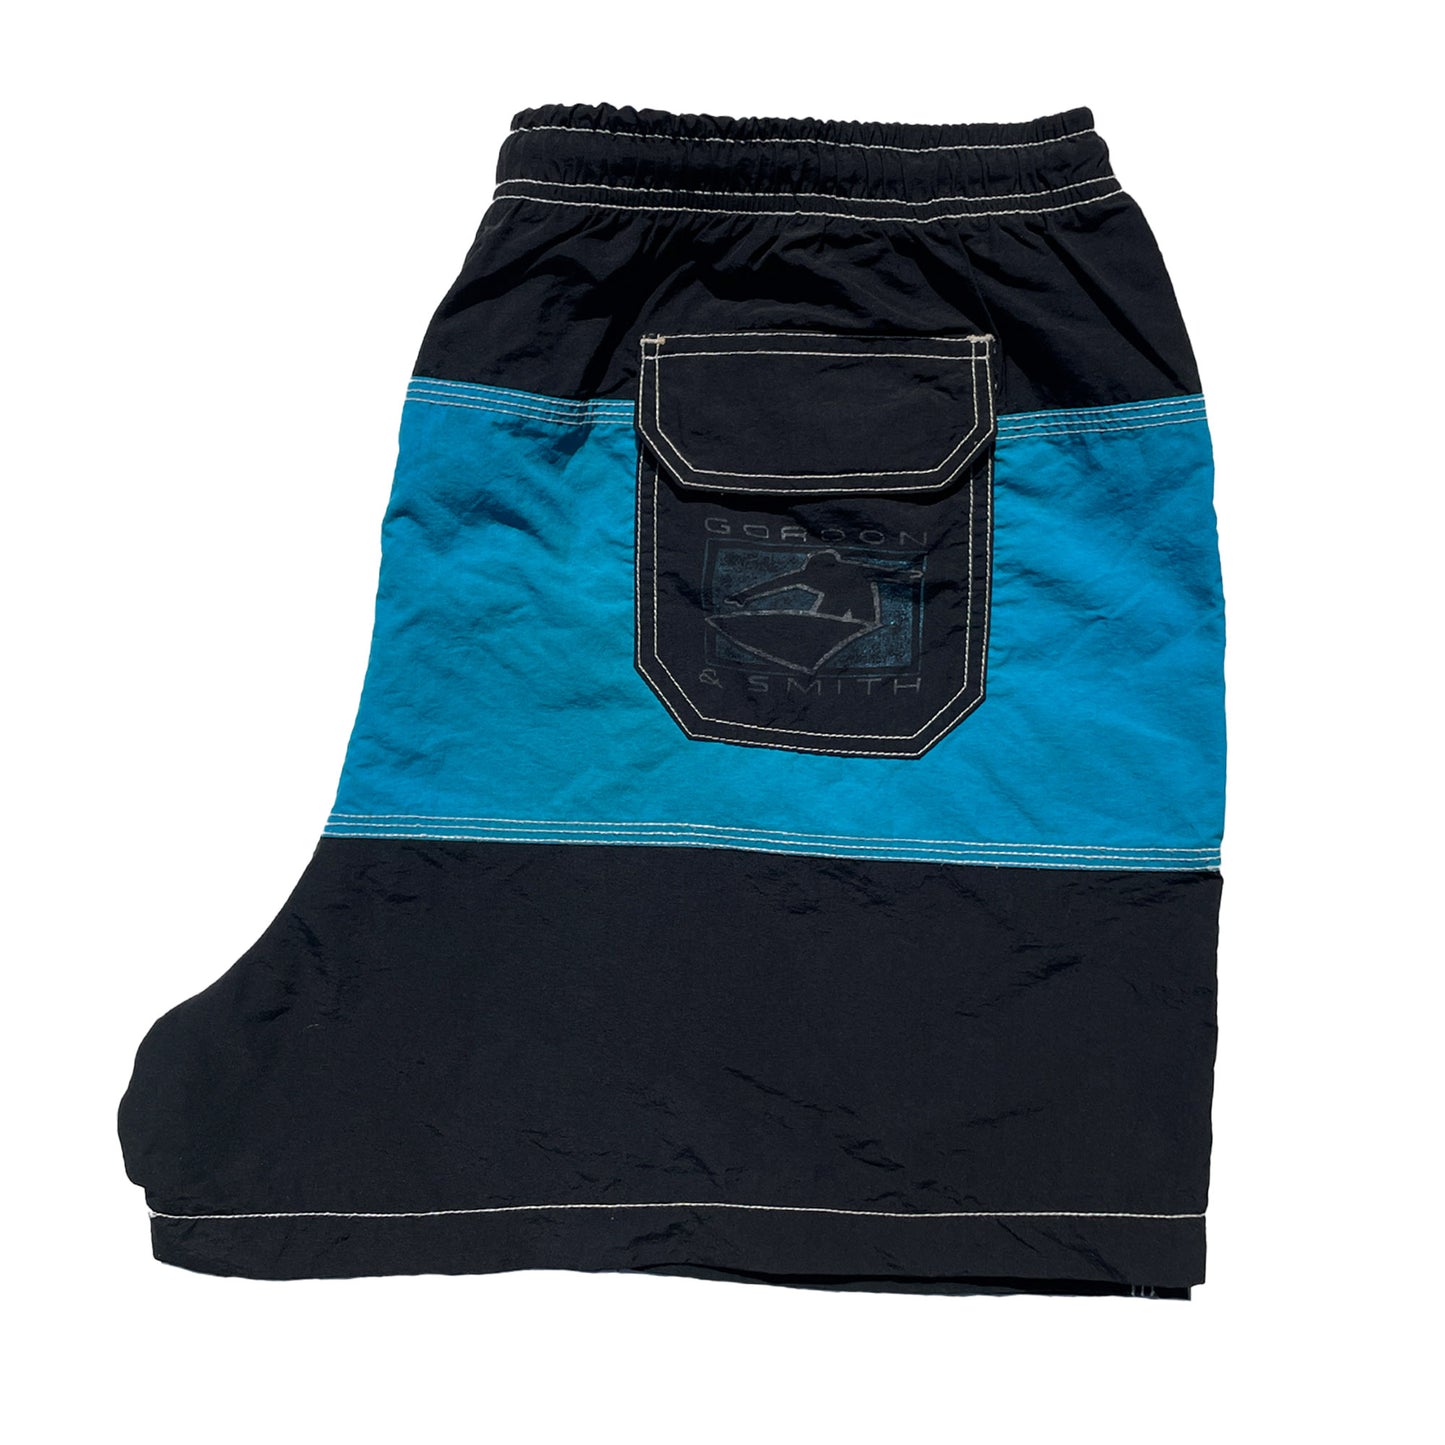 G&S Board Shorts (Blue/Black) VINTAGE 80s